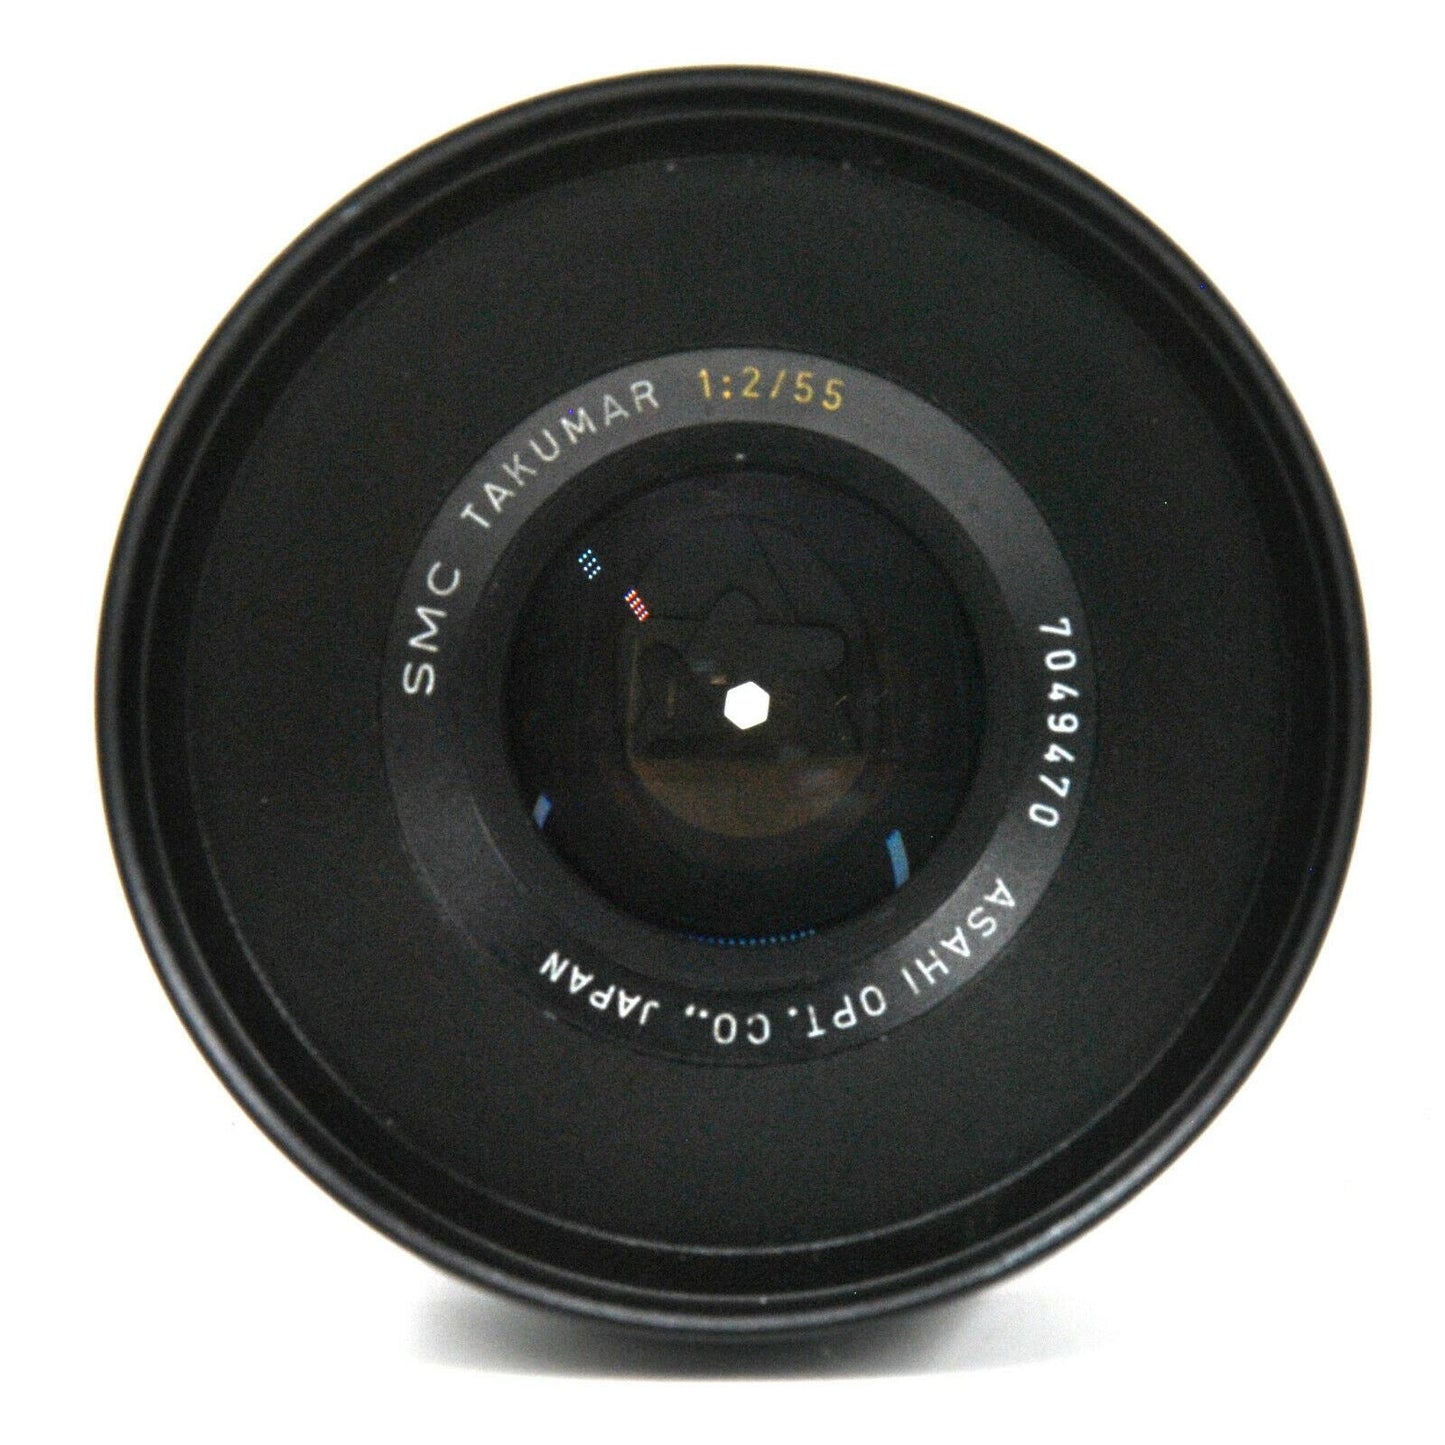 F2 Prime Cine Lens